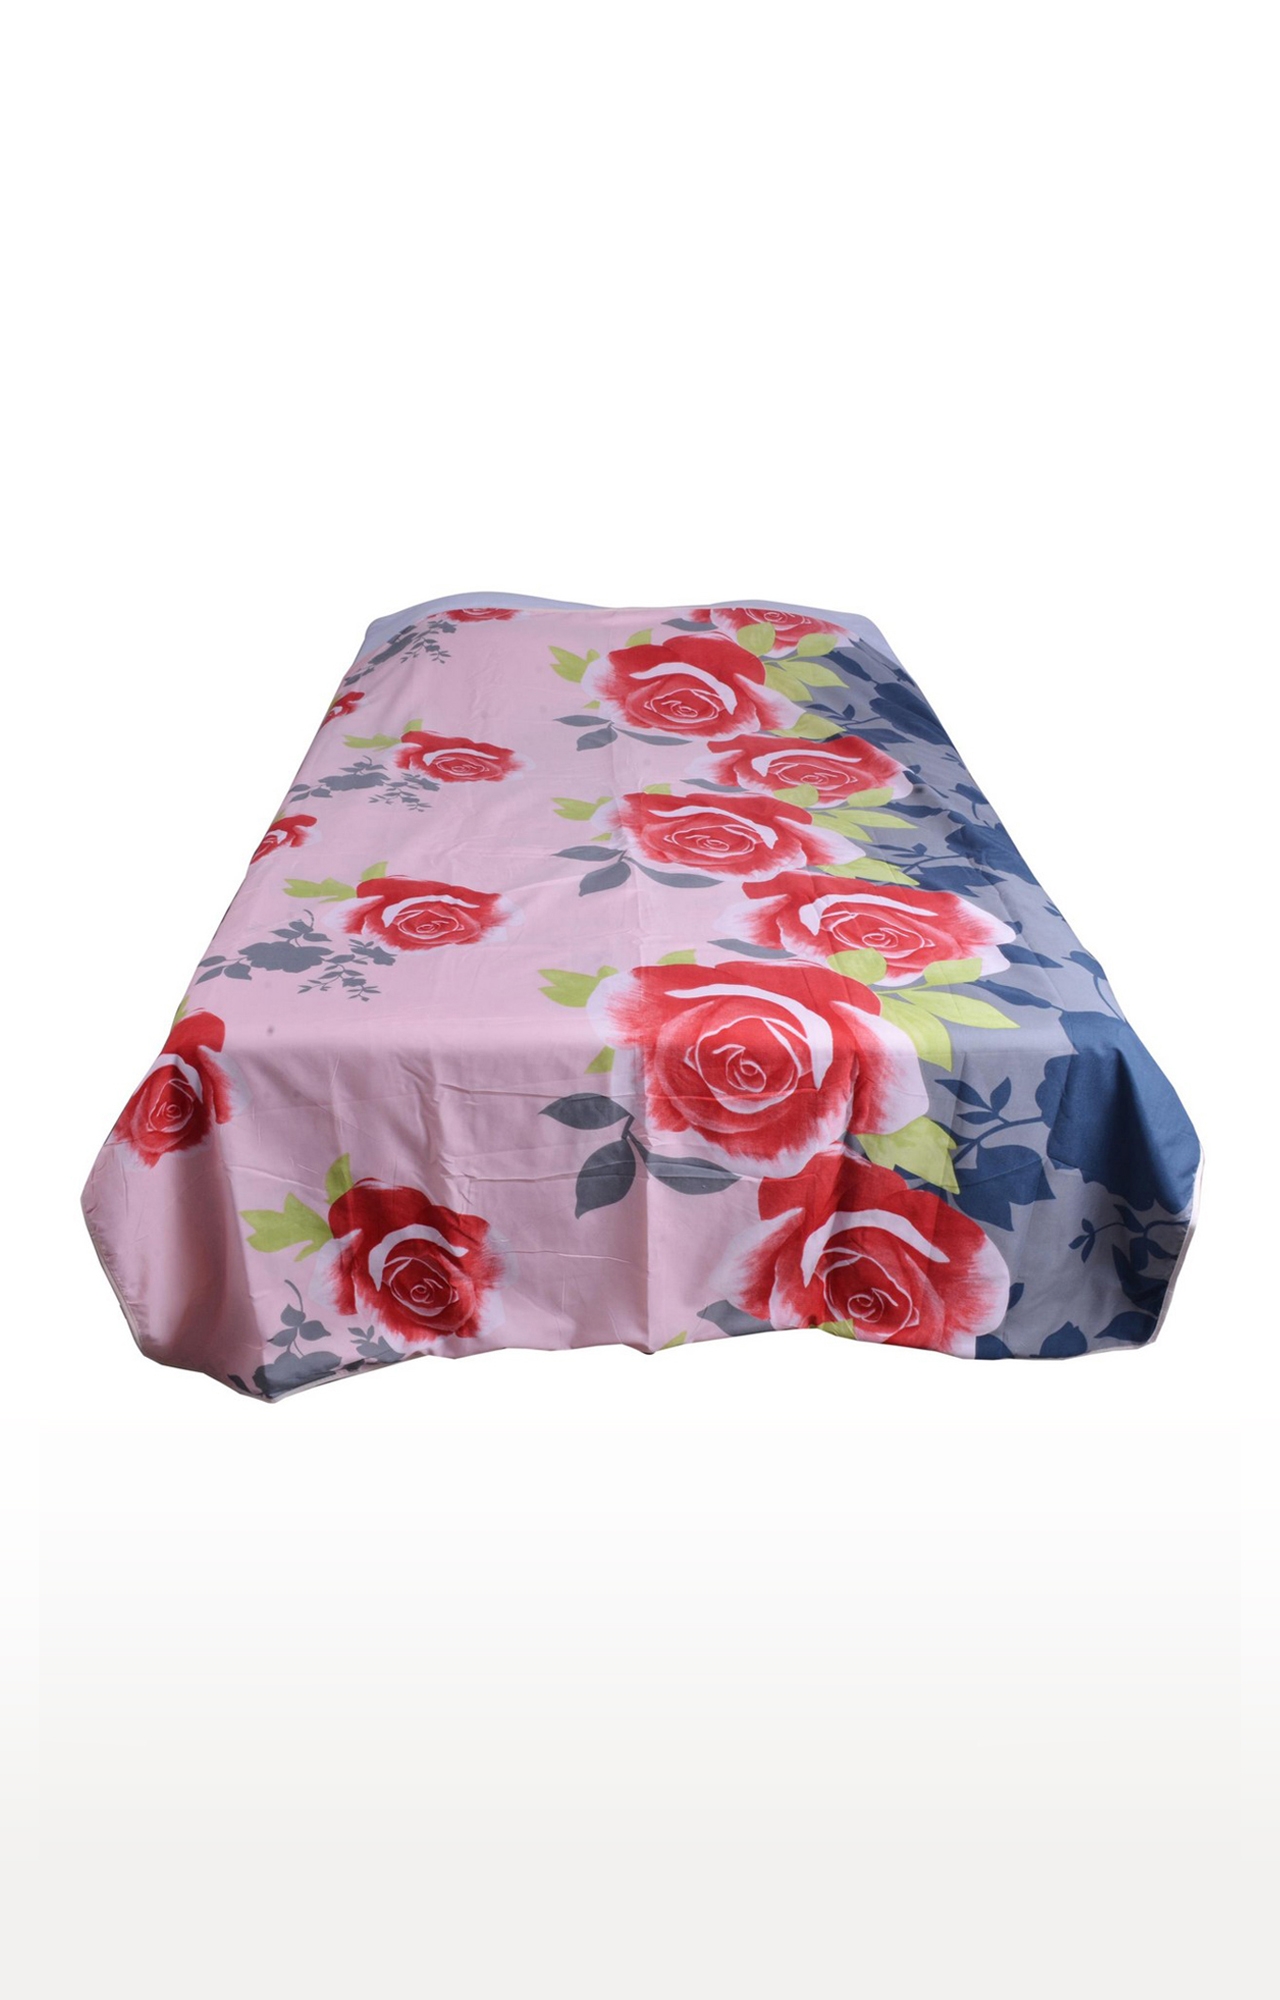 V Brown | Rose Flower Printed Cotton 3 Layer Single Bed Quilt Dohar 0